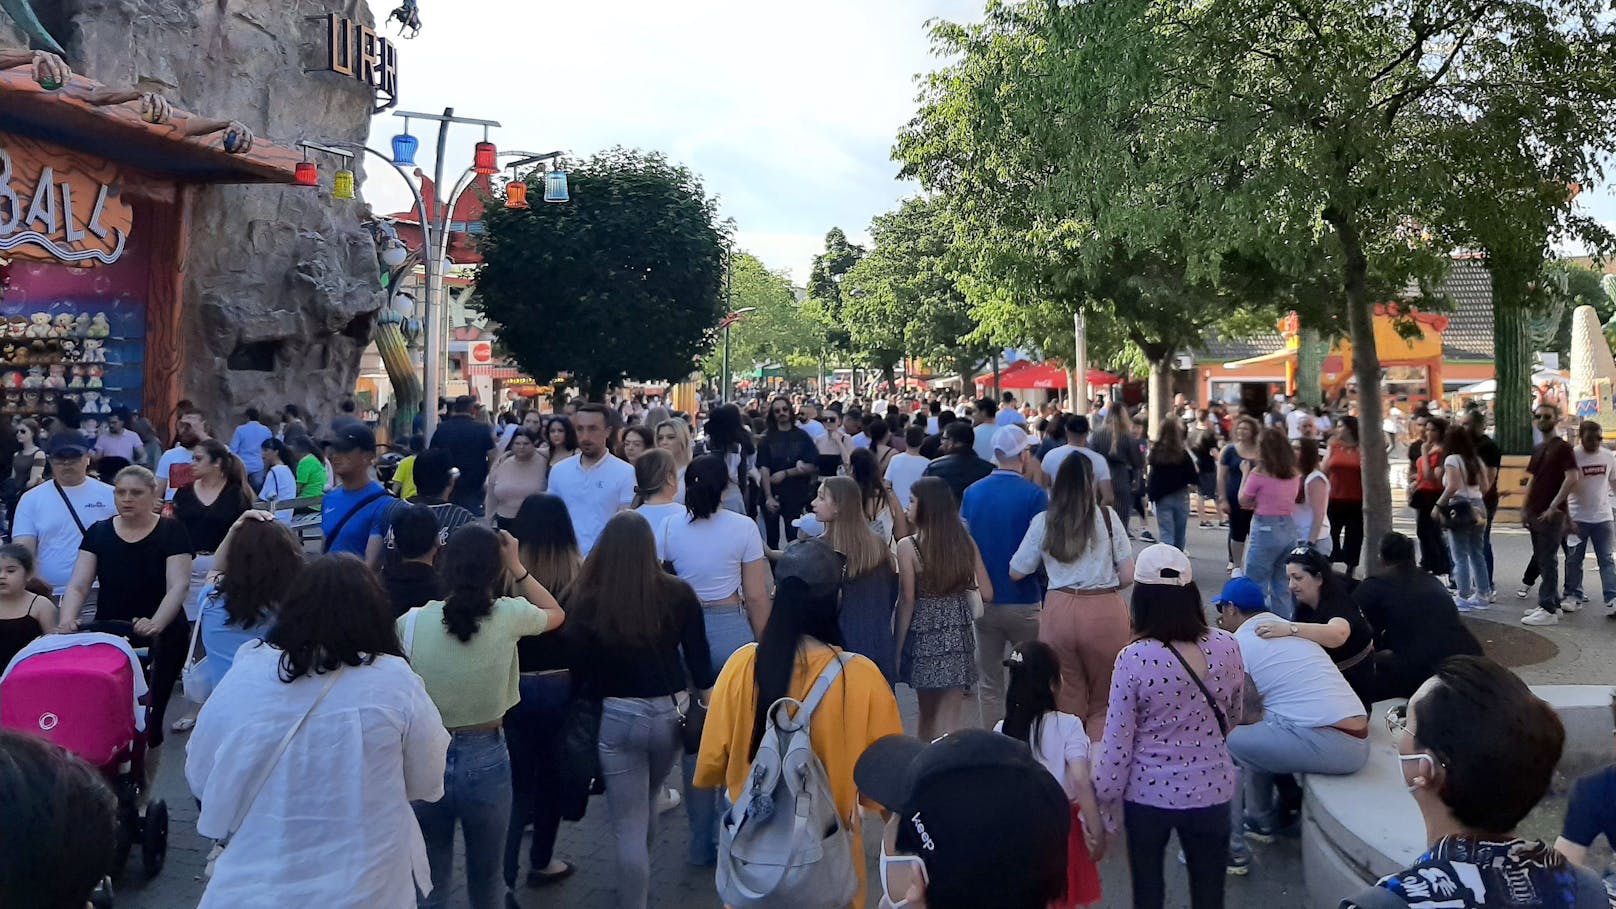 Menschenmassen im Wiener Prater am Donnerstag, 3. Juni 2021. Symbolbild